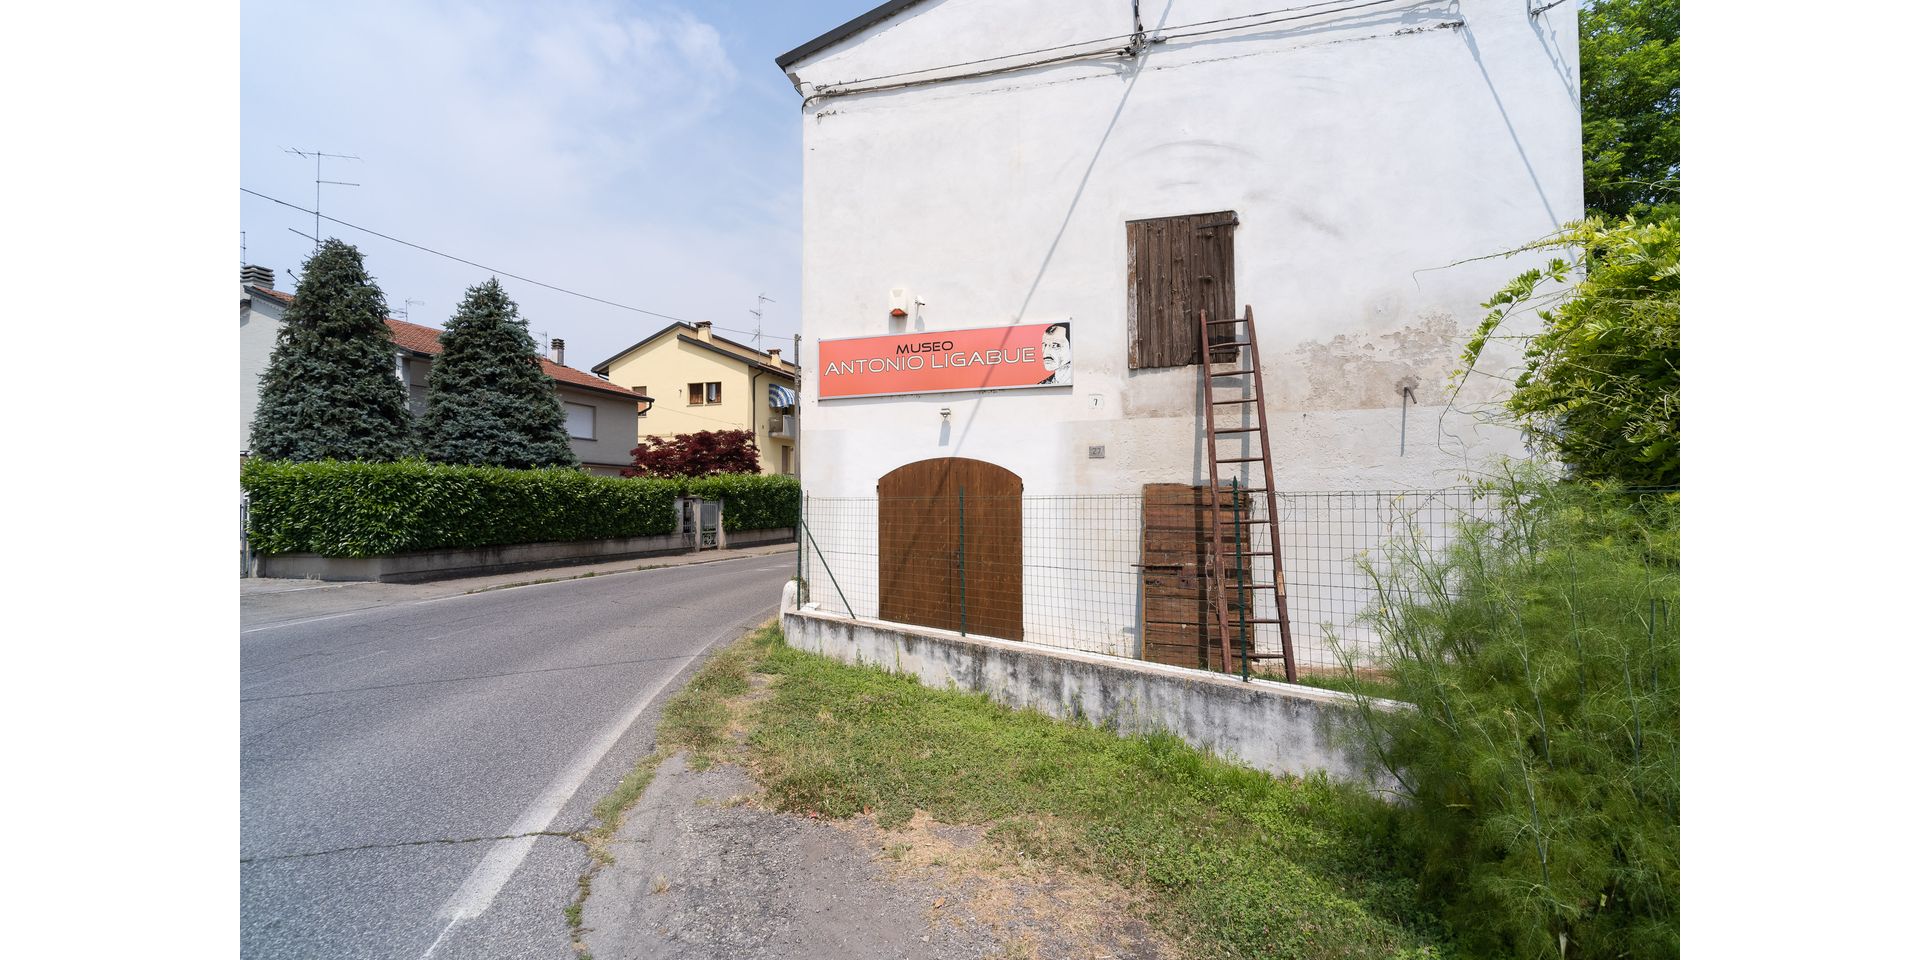 Casa Museo Antonio Ligabue, Gualtieri - fotografia di Luca Bacciocchi